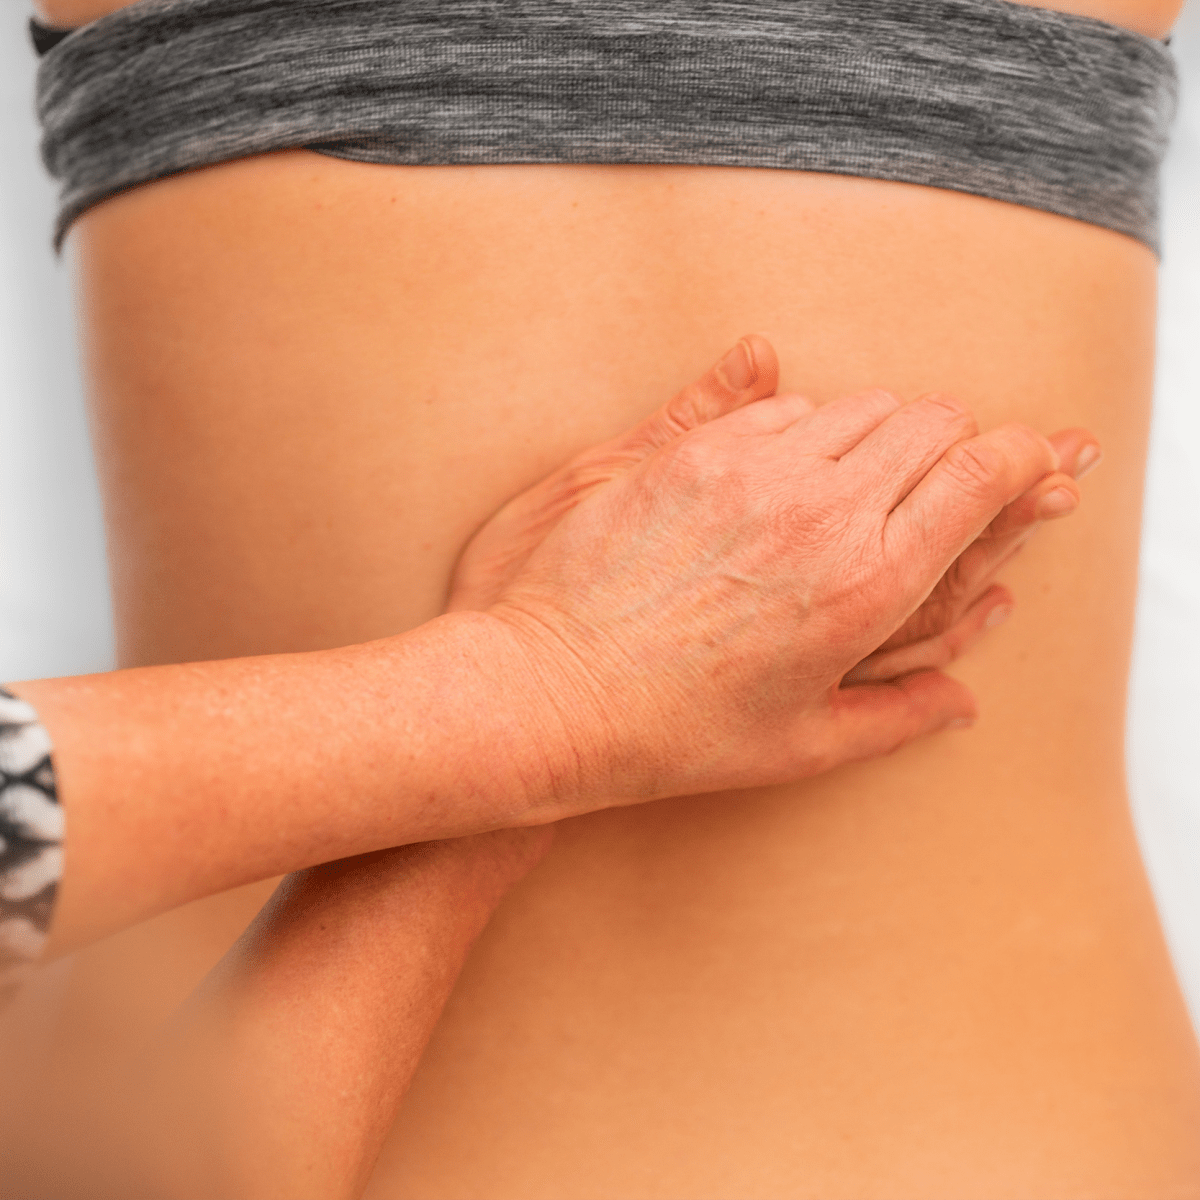 lower back muscles - WSIB Massage Therapy